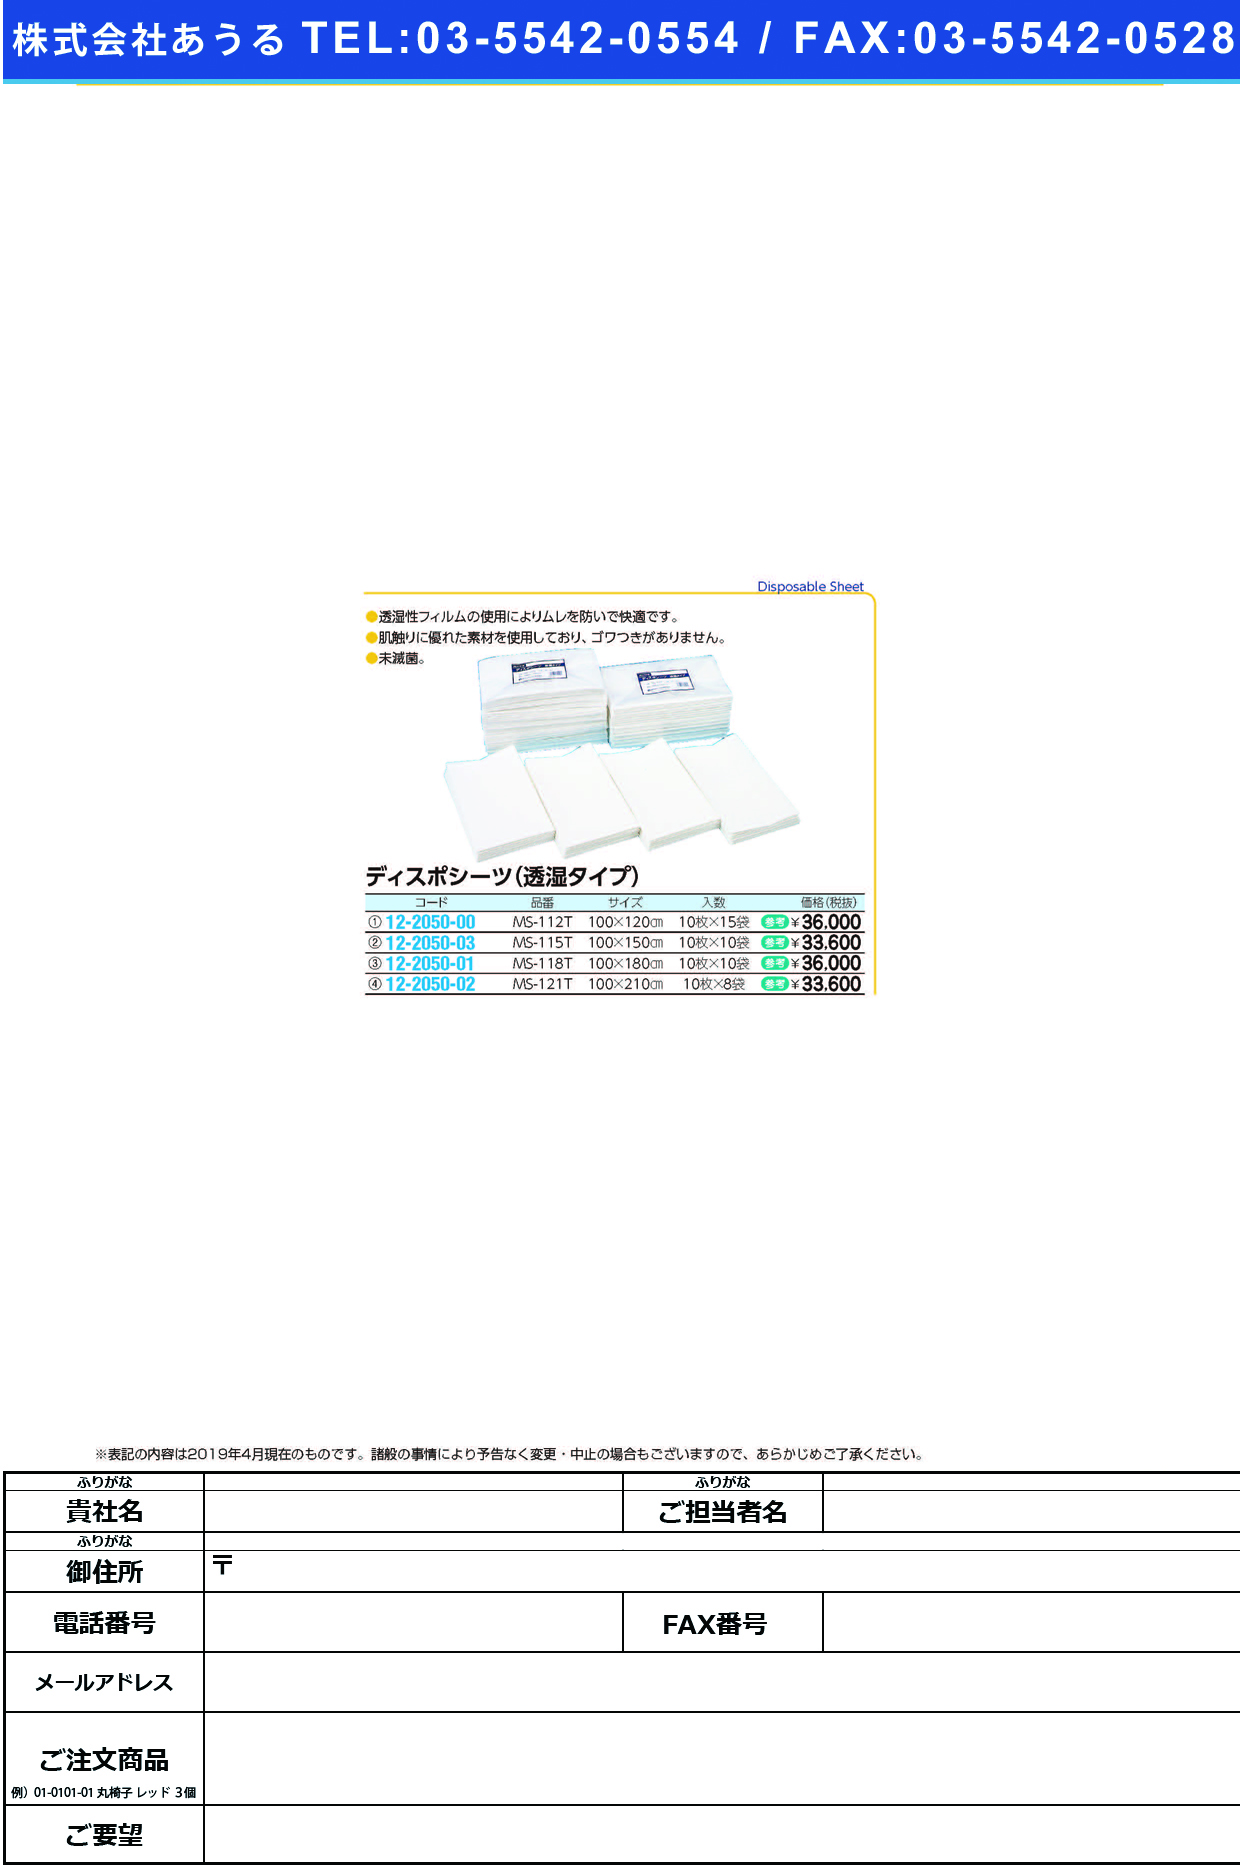 (12-2050-02)ディスポシーツ（透湿タイプ）未滅菌 MS-121T(10ﾏｲX8ﾌｸﾛ) ﾃﾞｨｽﾎﾟｼｰﾂﾄｳｼﾂﾀｲﾌﾟ【1梱単位】【2019年カタログ商品】